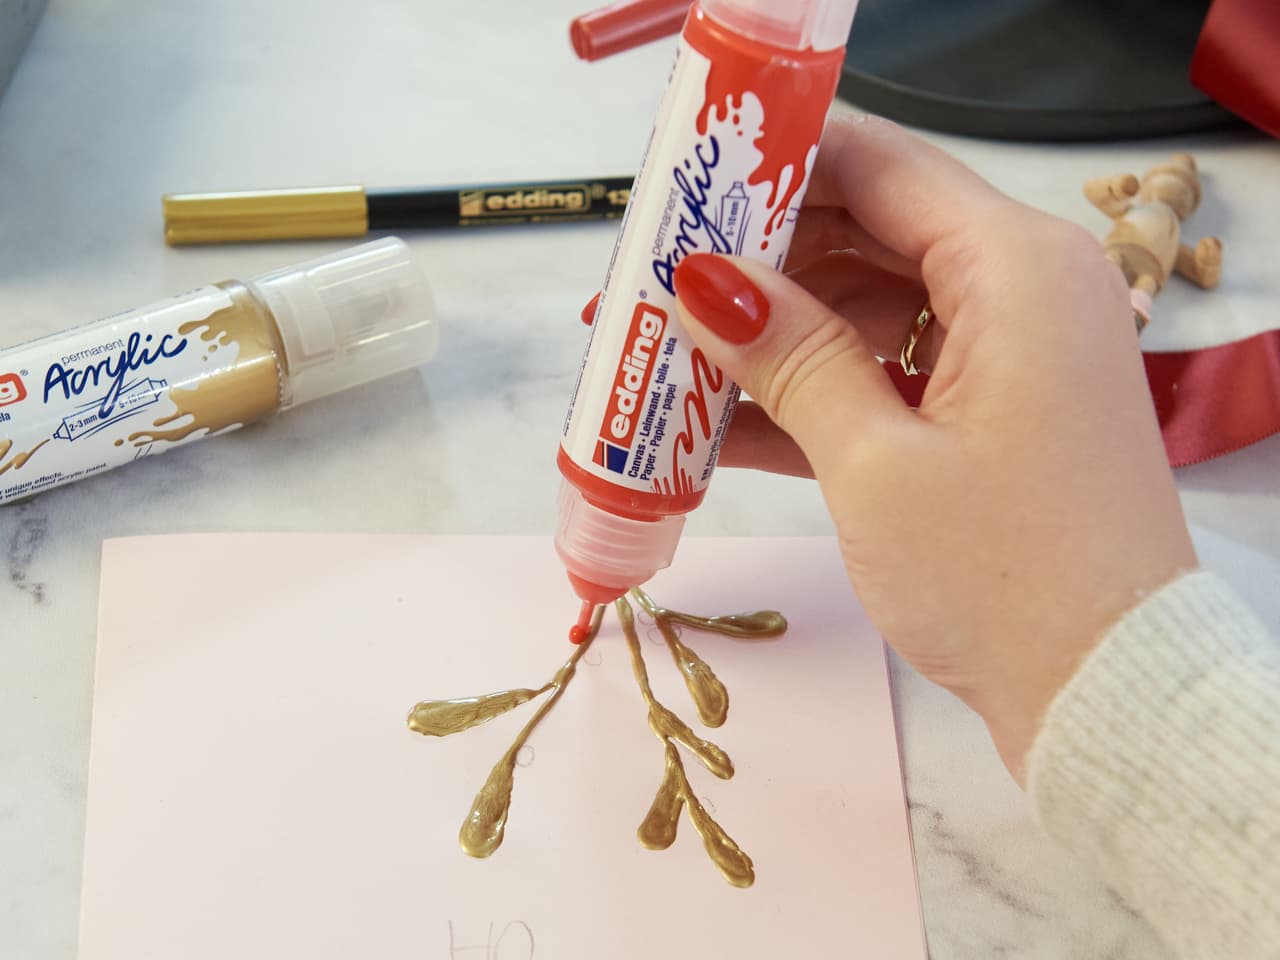 Eine Hand drückt eine Tube roten edding 5400 Acryl 3D Double Liner auf ein Blatt Papier mit goldenem Farbdesign, in der Nähe befinden sich andere Künstlerutensilien.